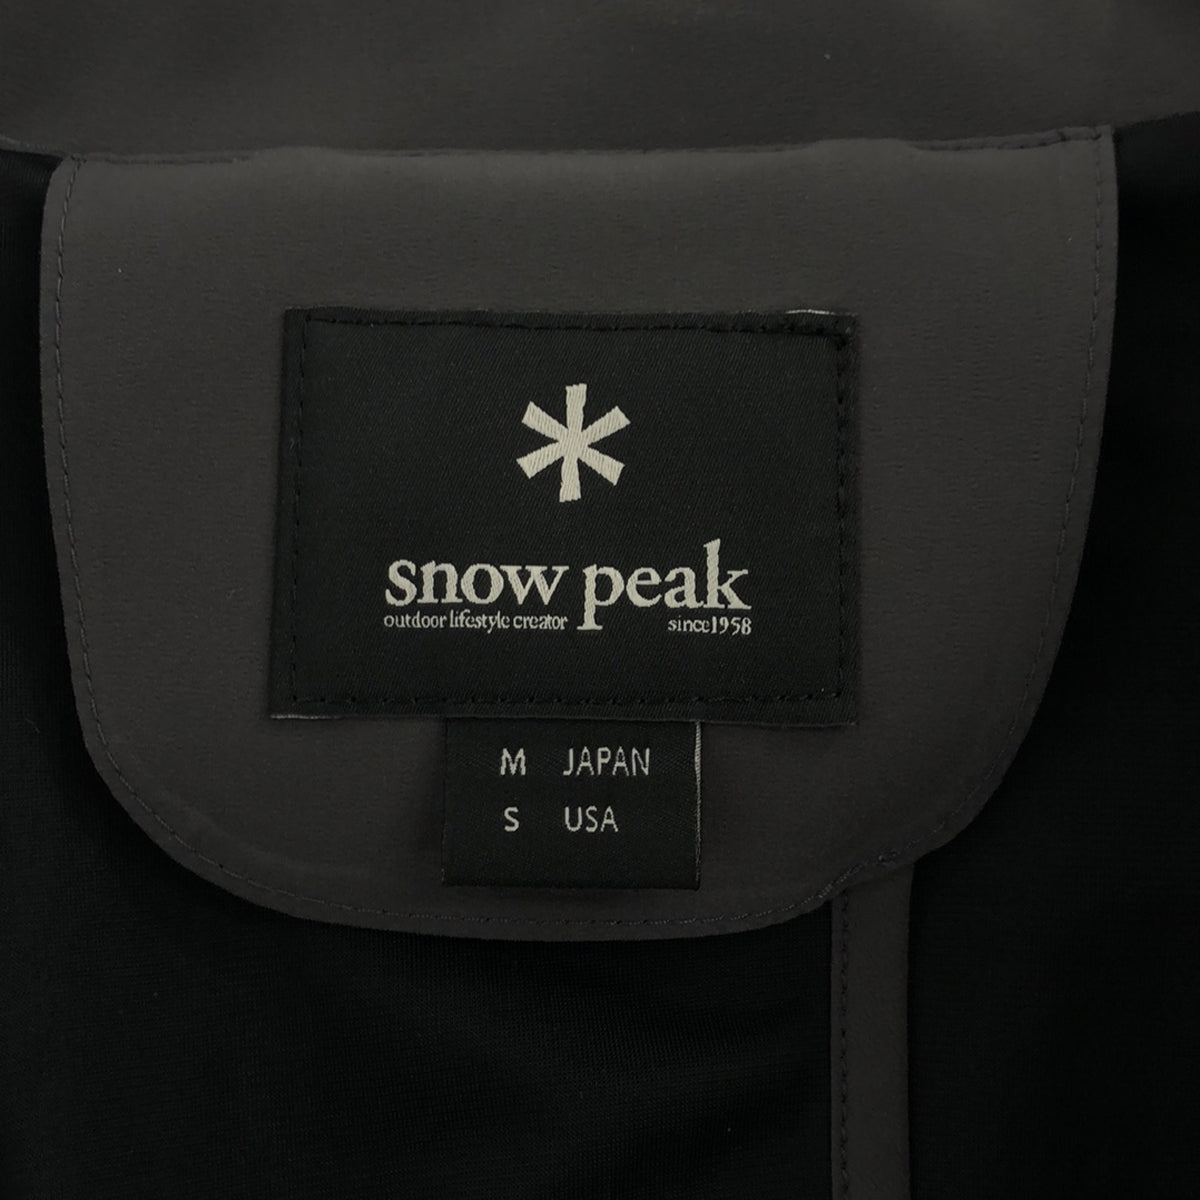 SNOW PEAK / スノーピーク | セットアップ ウォーターレジスタンスコンフォートトリップ ジャケット / パンツ | M | メンズ